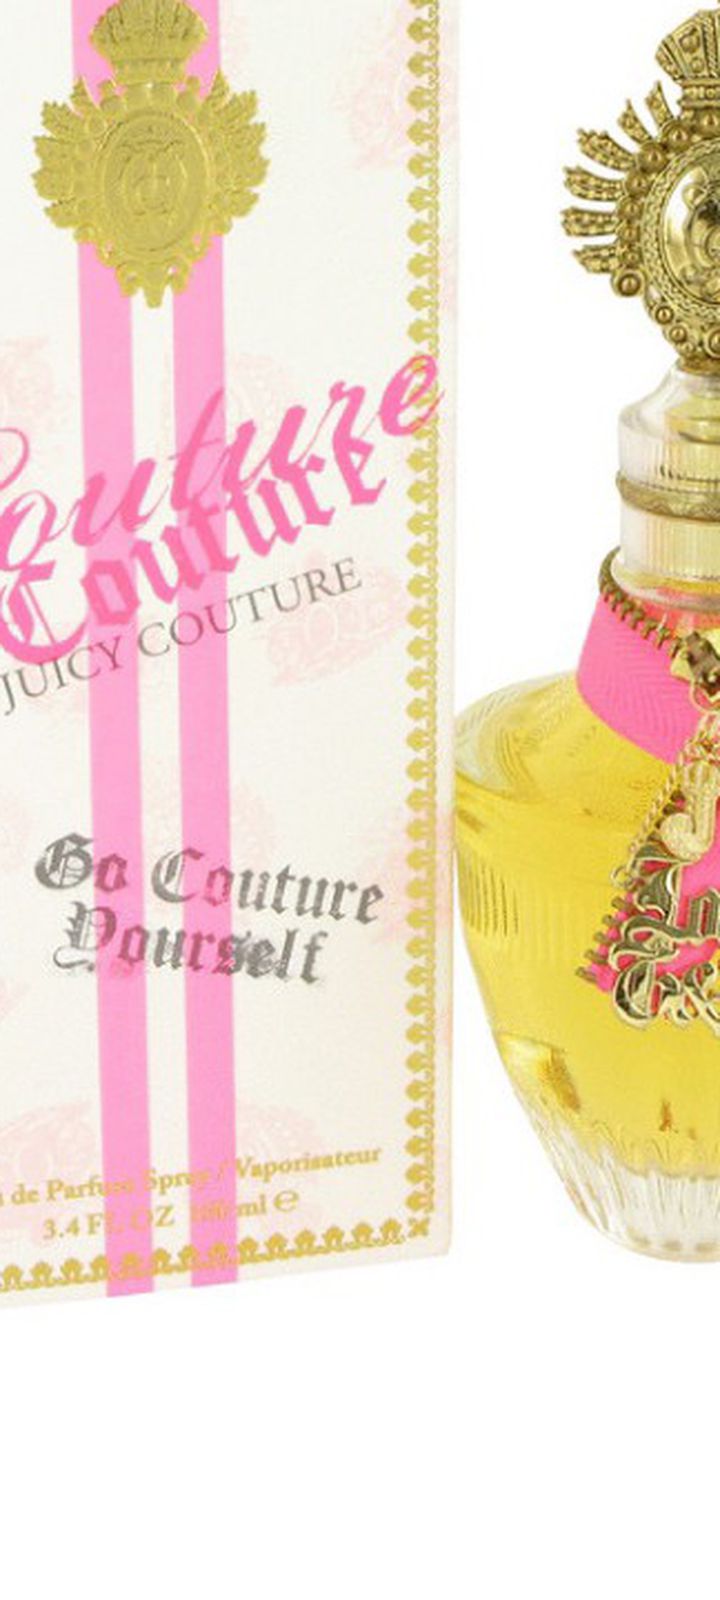 Couture Couture 3.4 Oz Eau De Parfum Spray By JUICY COUTURE